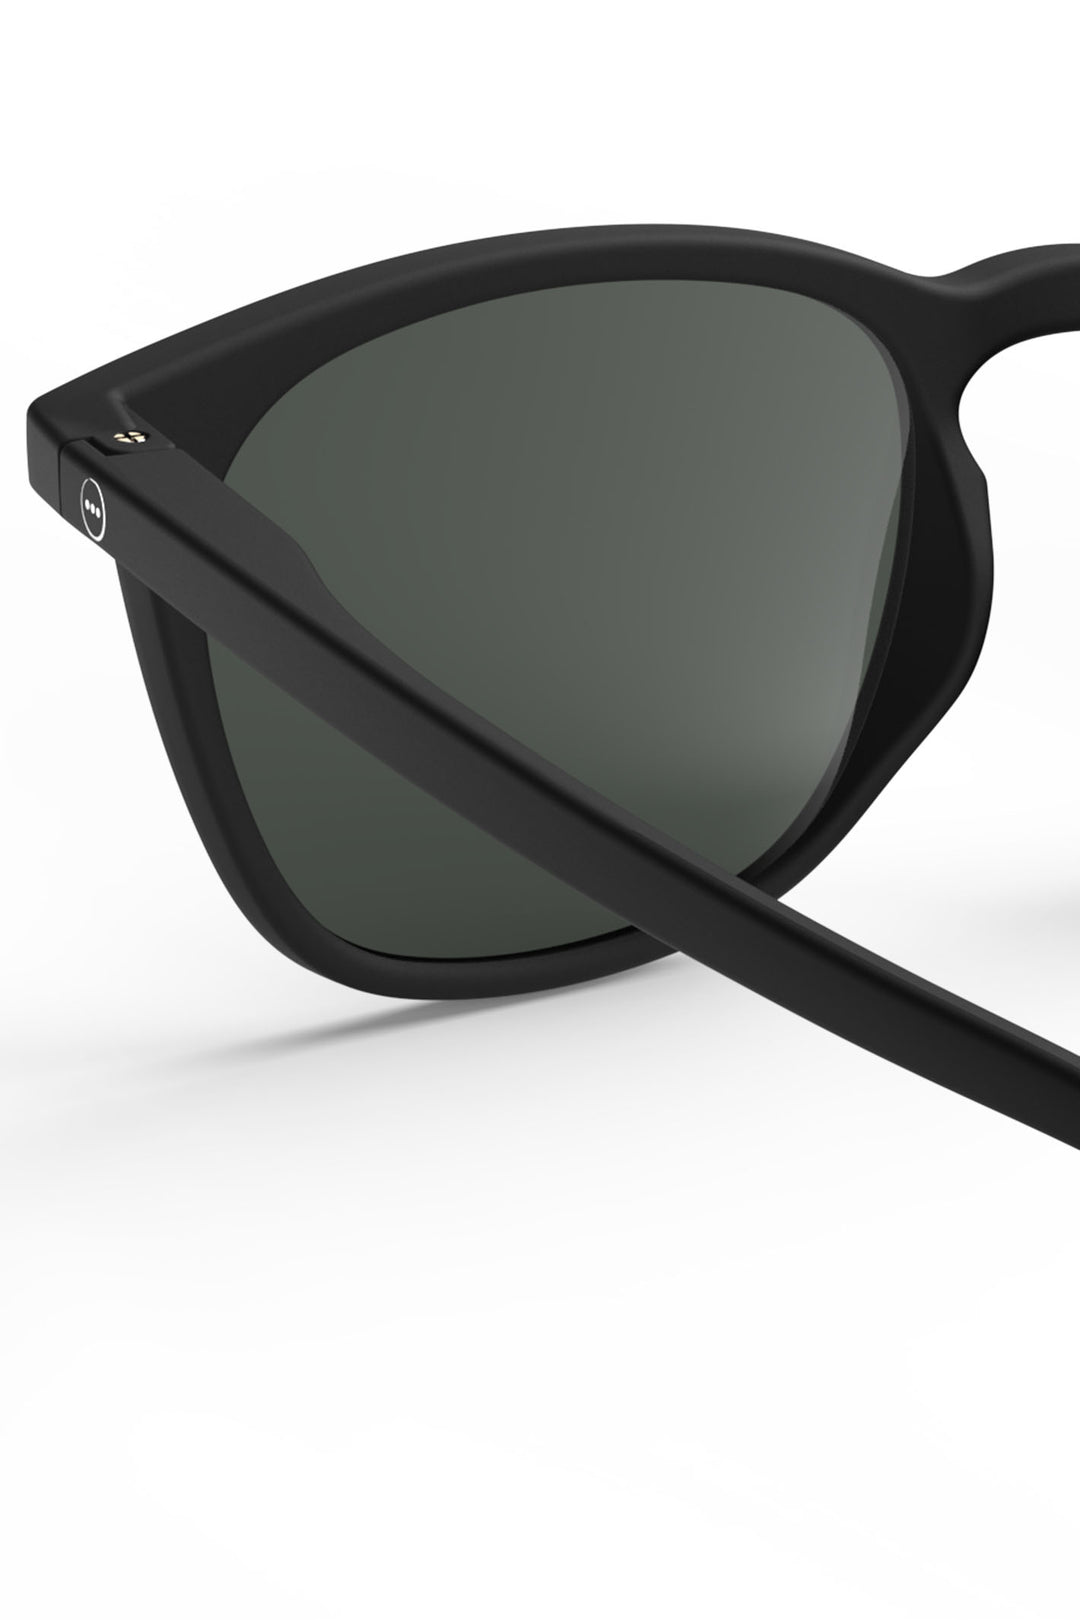 Izipizi Paris SLMSEC01 Black Sunglasses - Olivia Grace Fashion